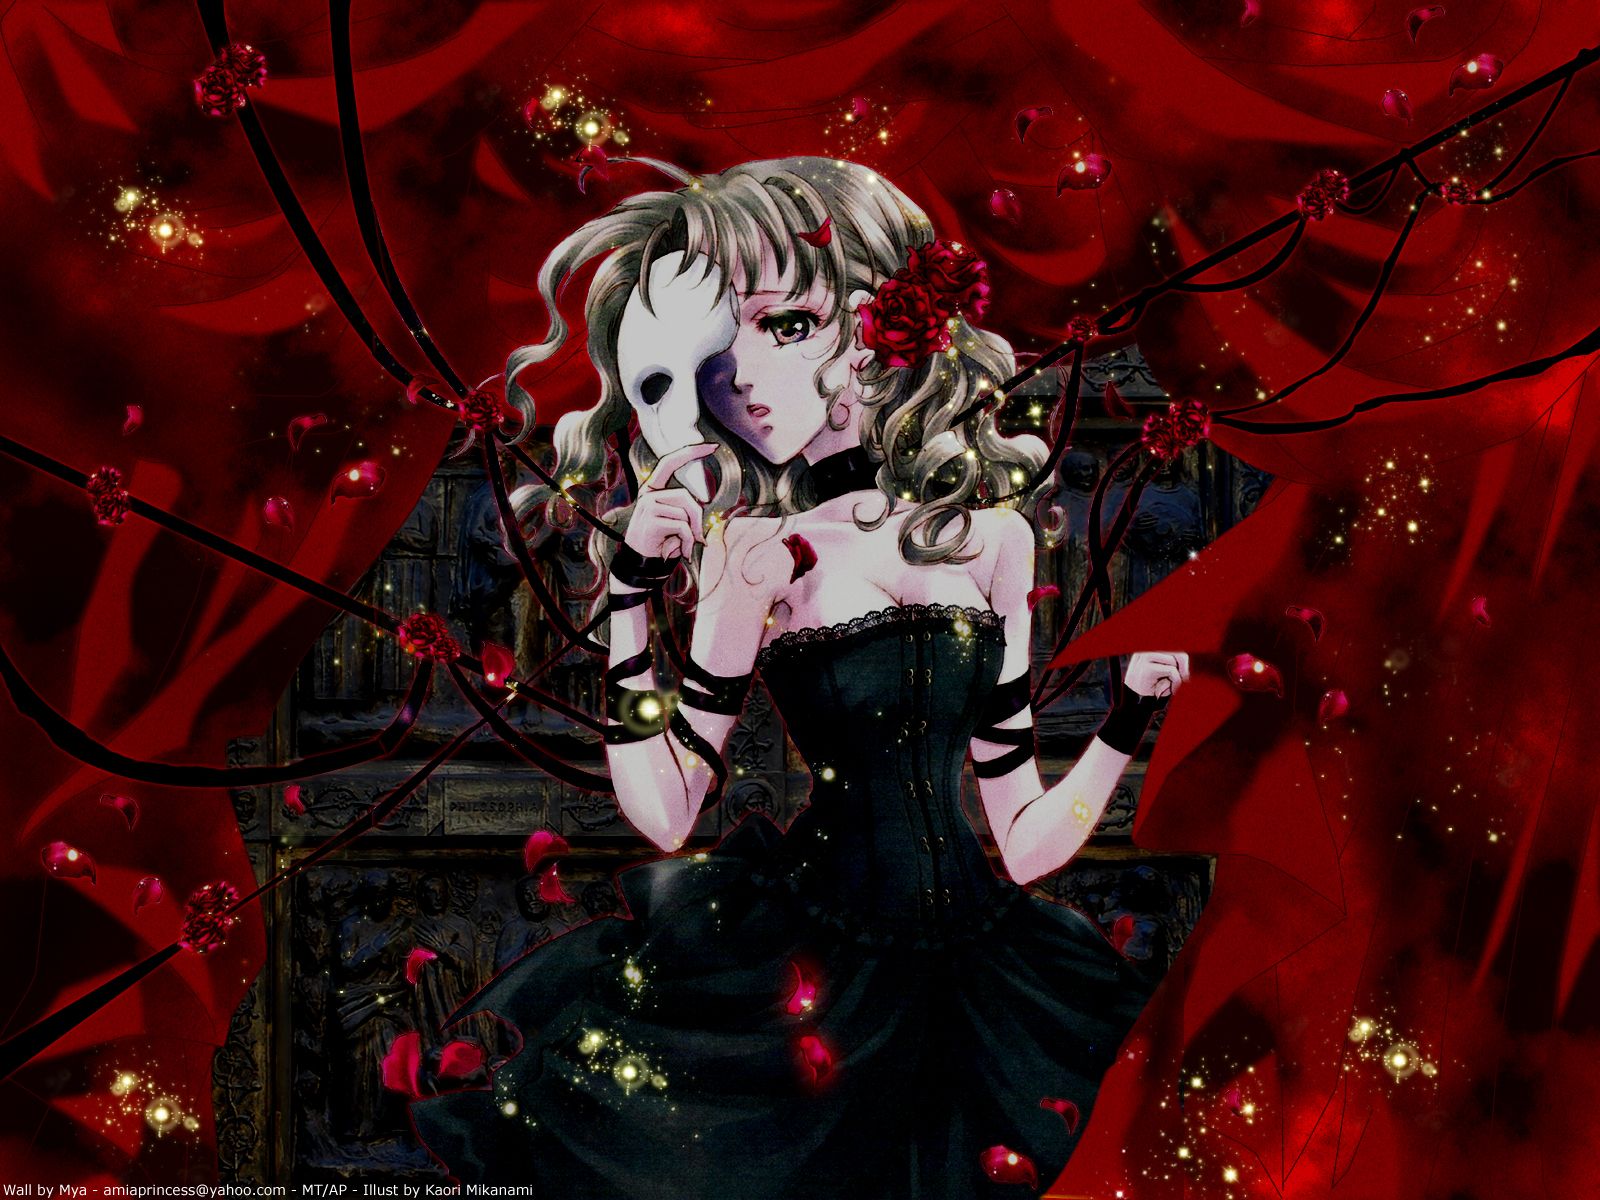 Kaori Minakami Wallpaper: The Phantom of The Opera!